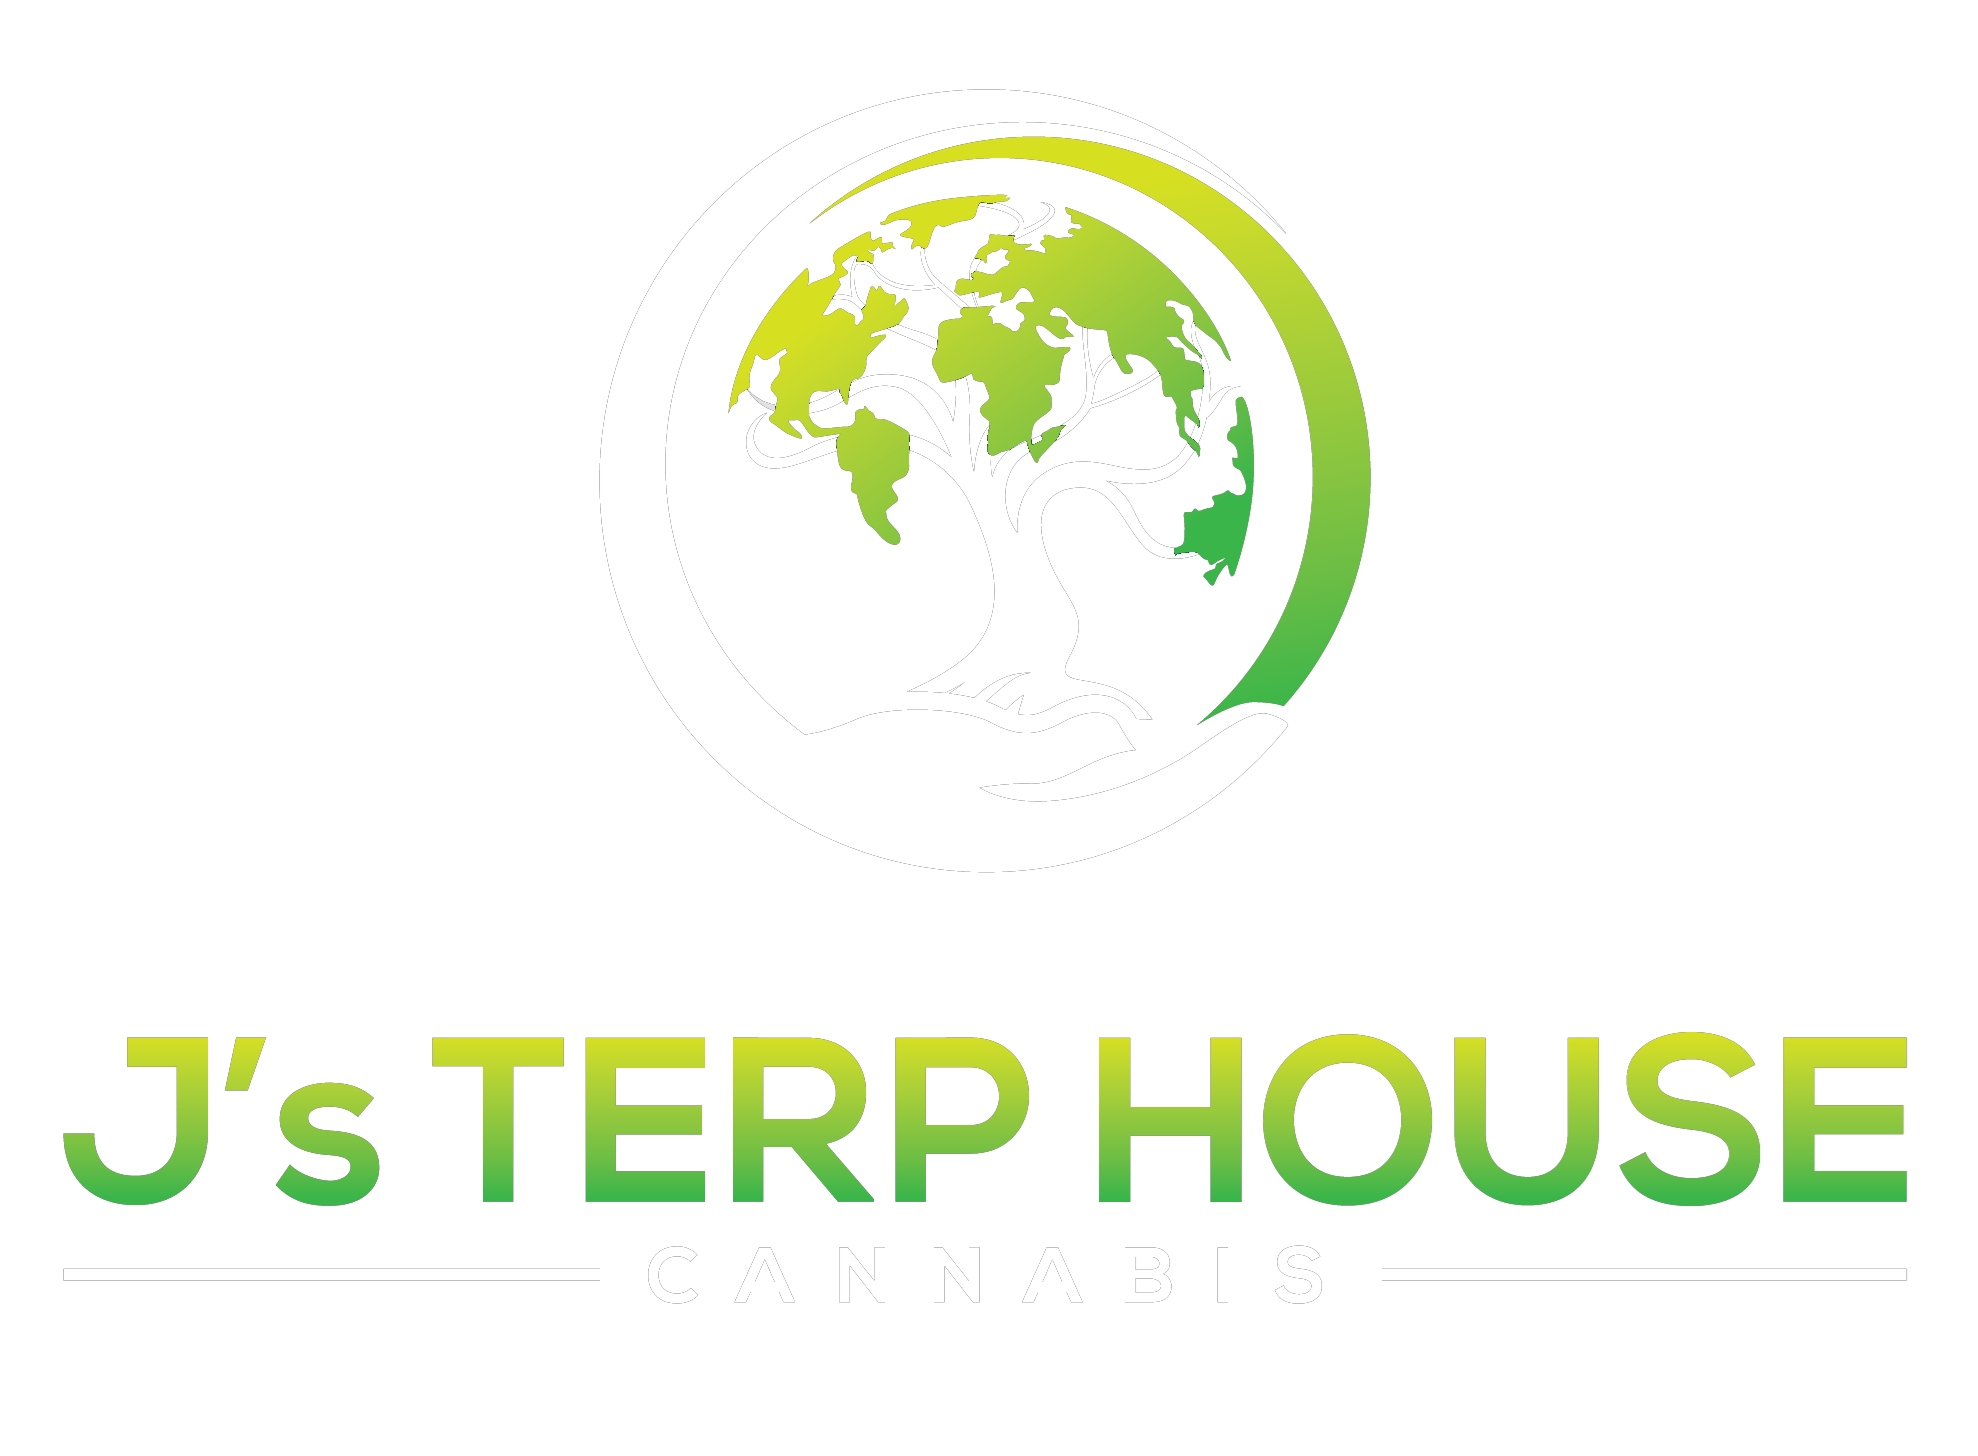 J's Terp House Cannabis Cannabis Brand Logo